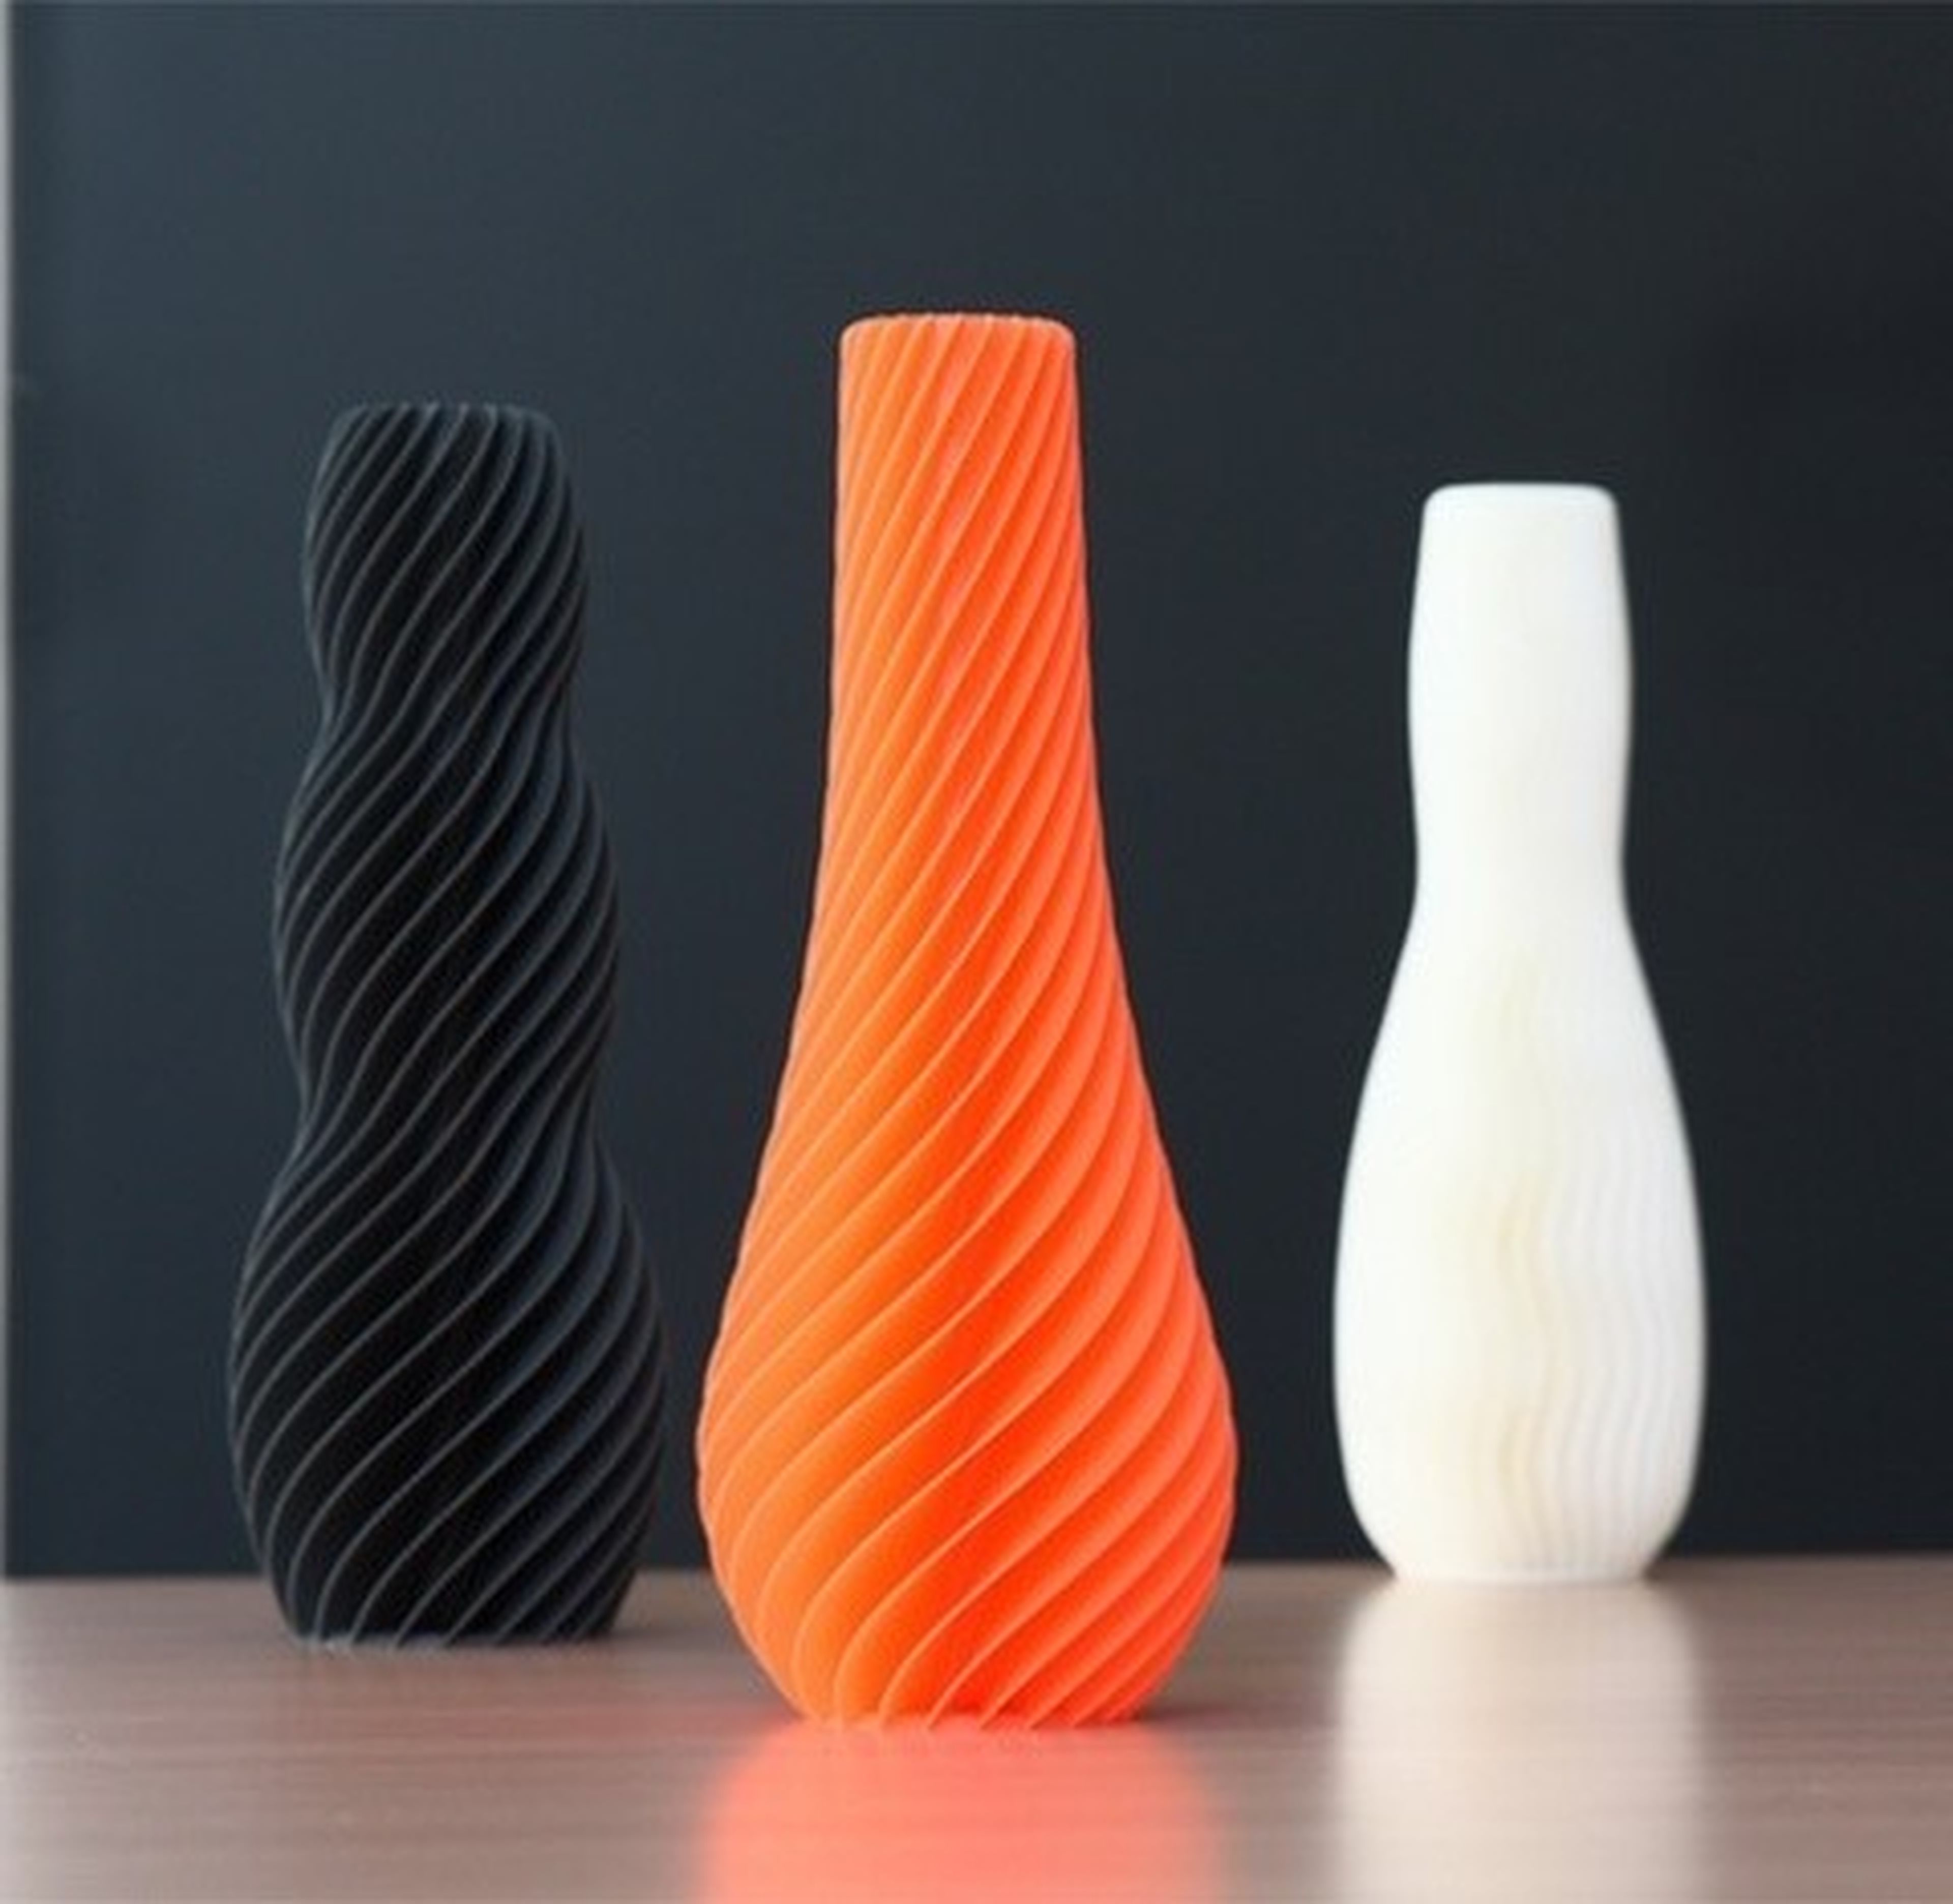 5 usos domésticos de la impresión 3D